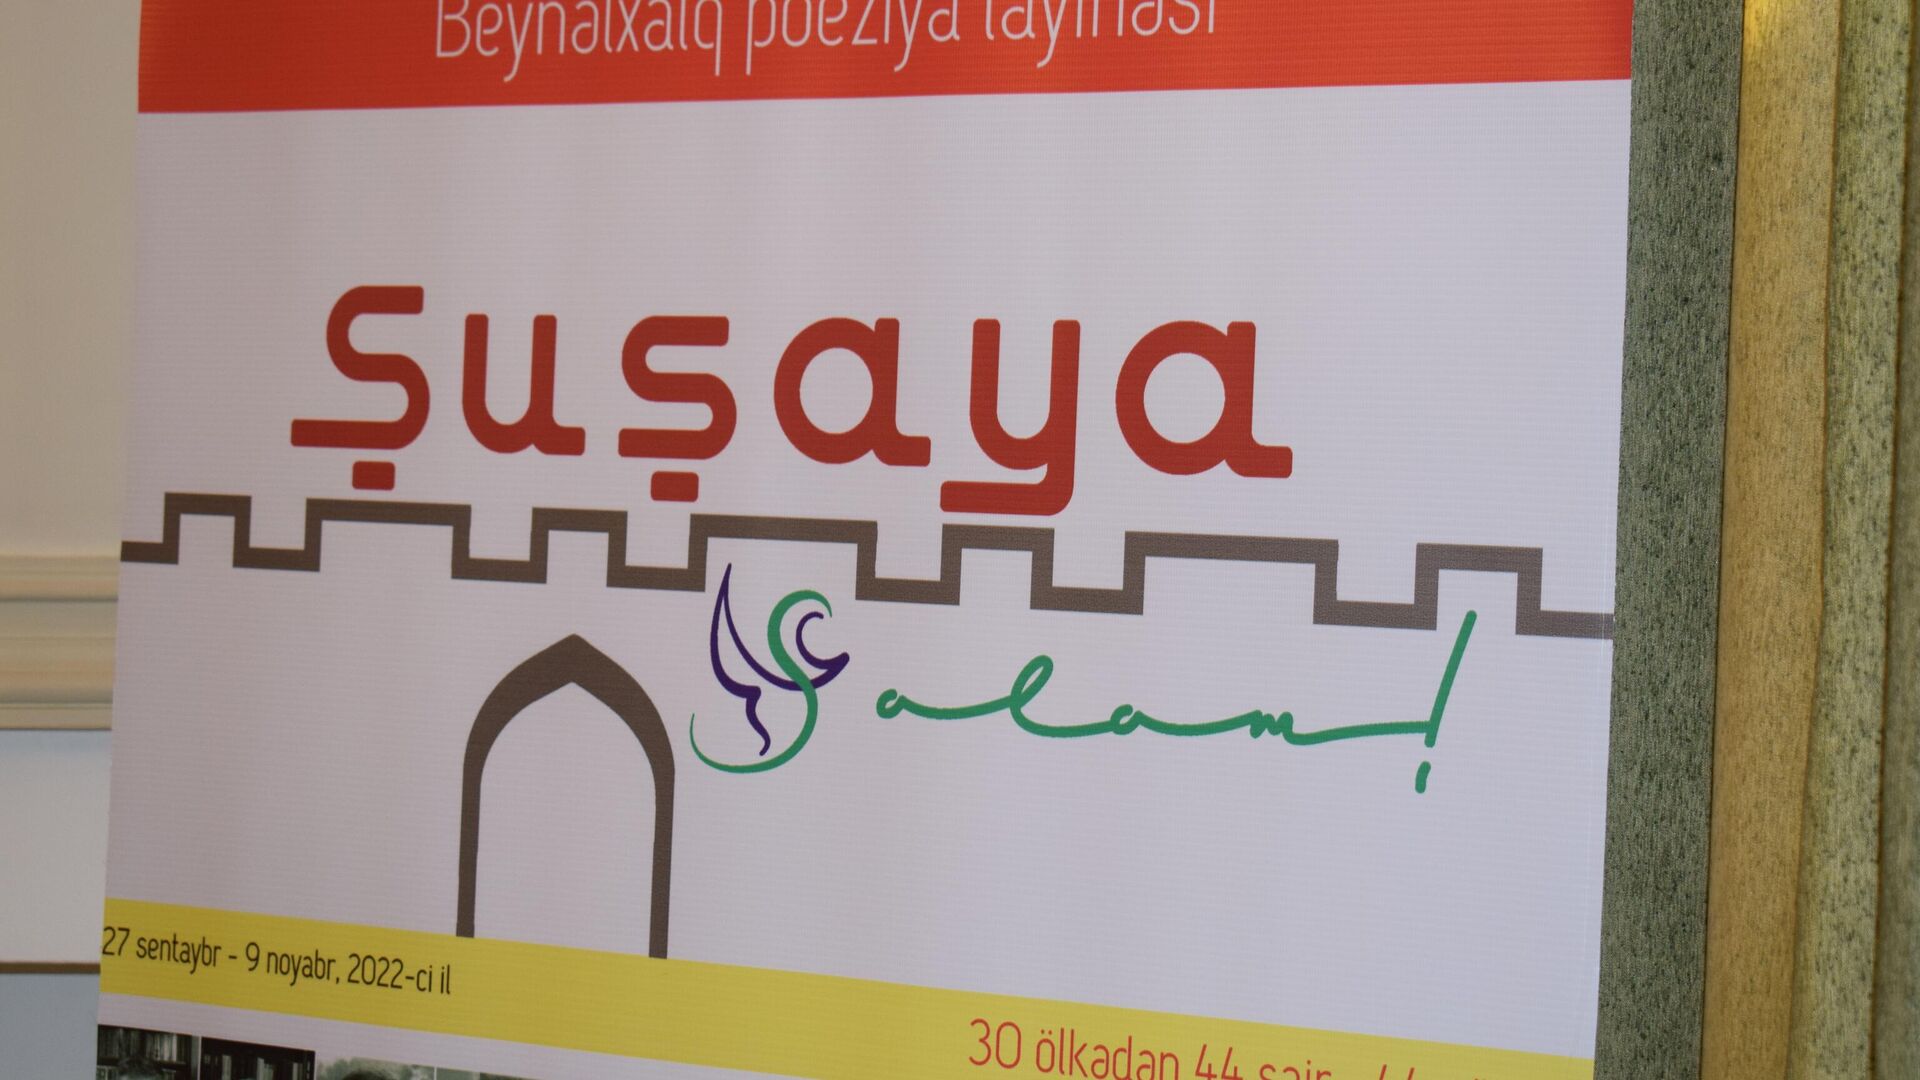 Şuşaya salam Beynəlxalq Poeziya layihəsinin təqdimat mərasimi  - Sputnik Azərbaycan, 1920, 23.09.2022